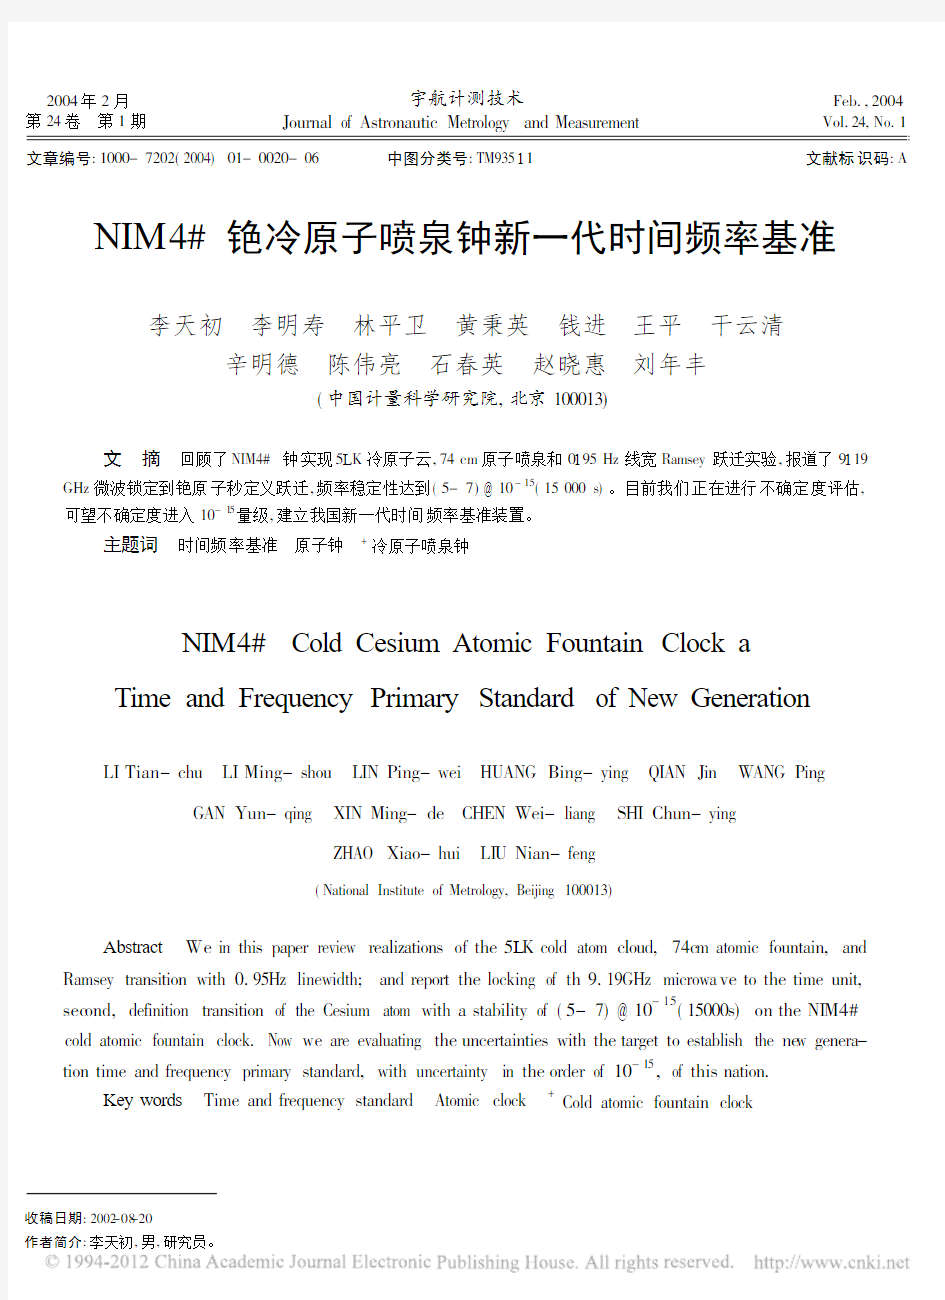 NIM4_铯冷原子喷泉钟新一代时间频率基准